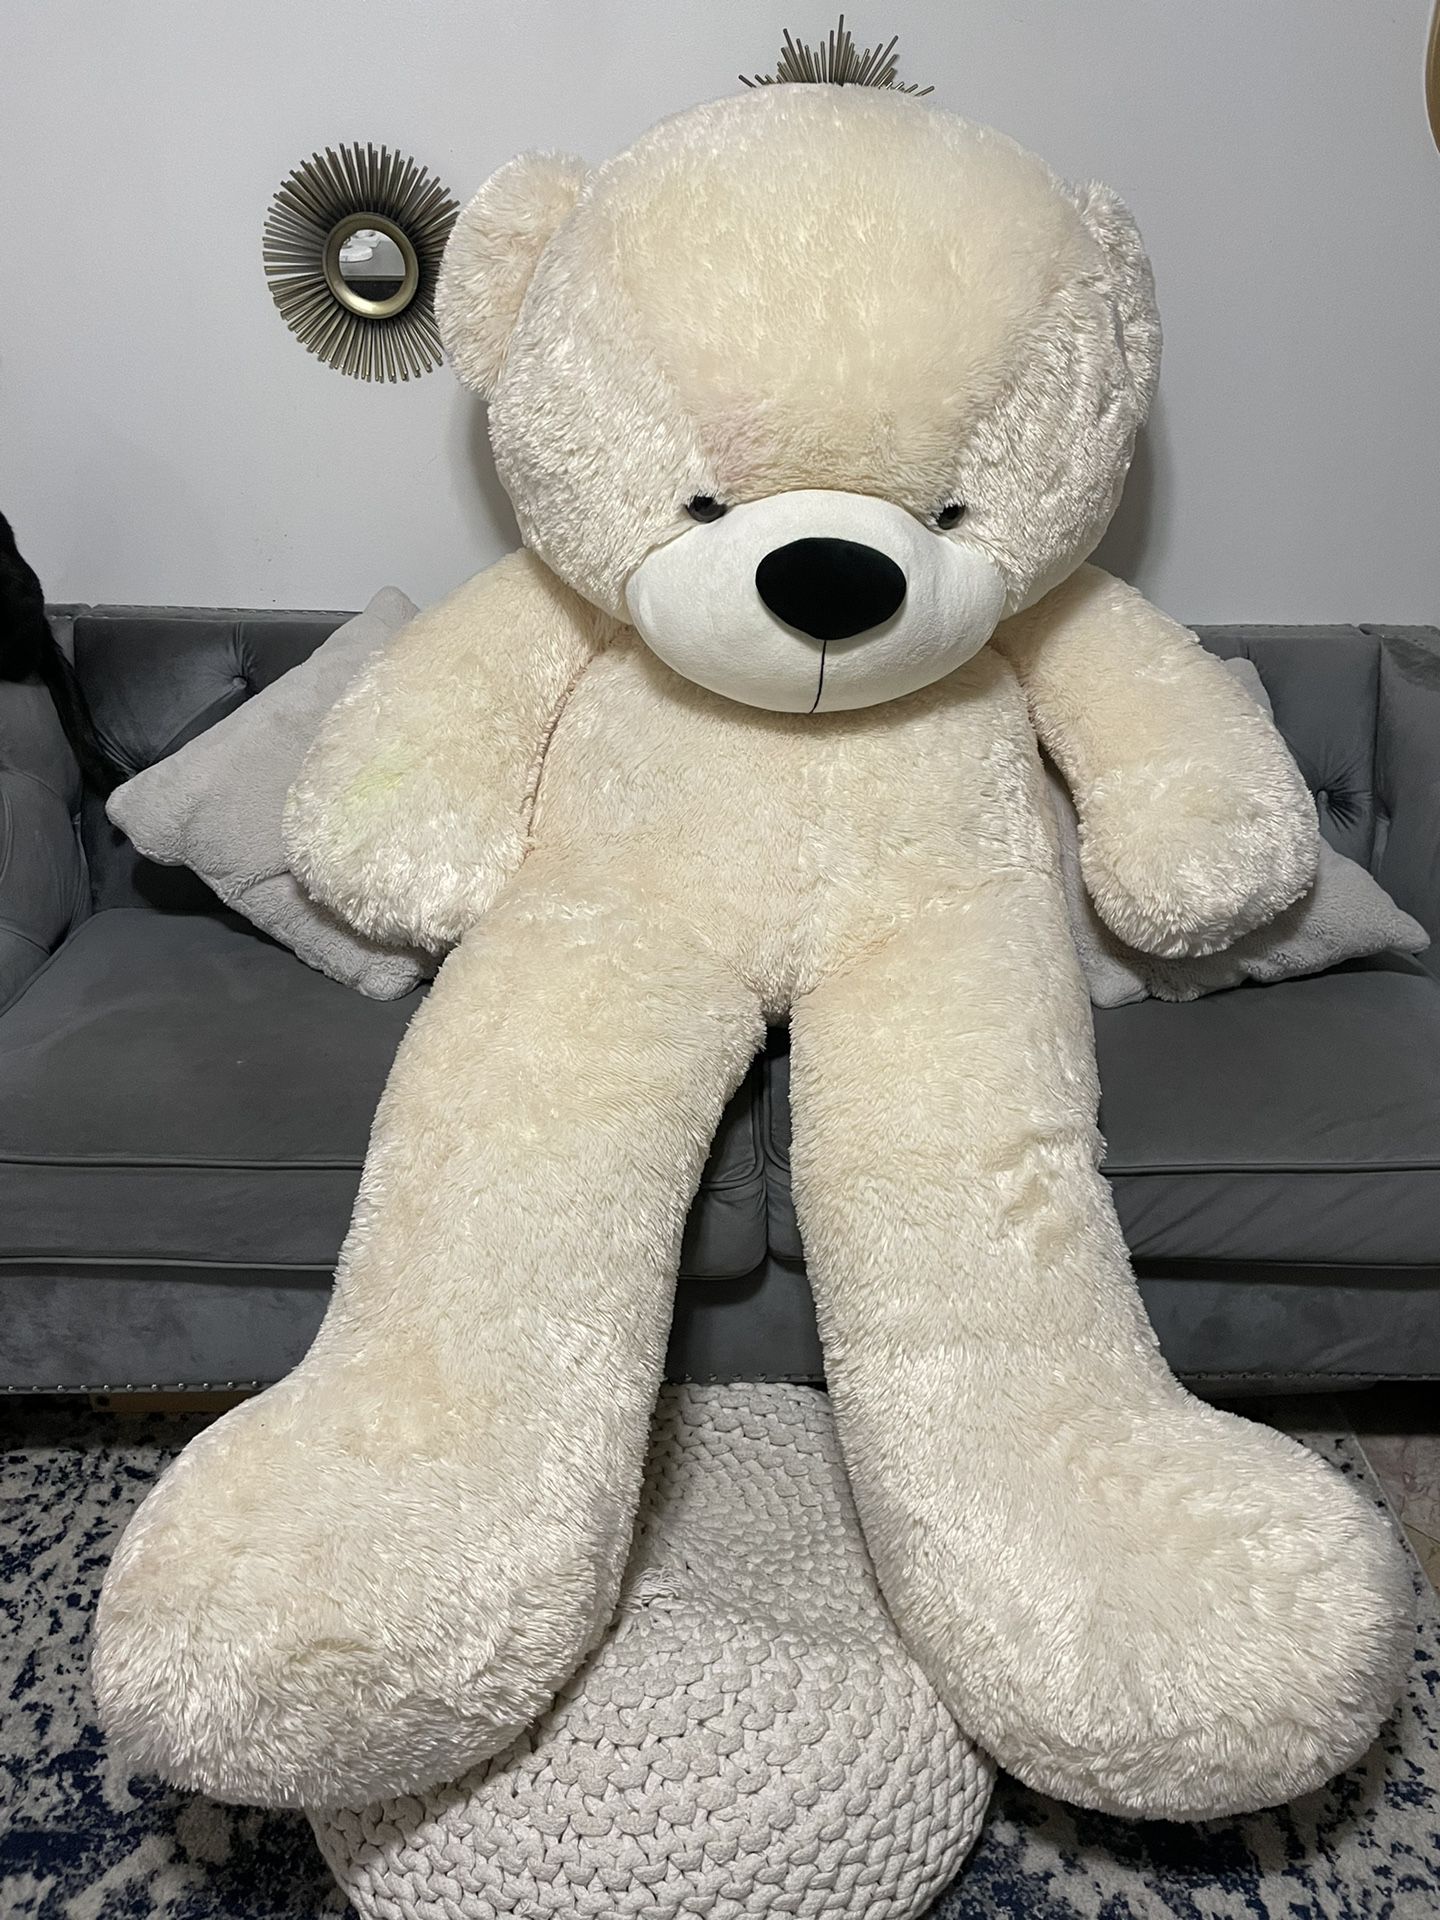 Giant Teddy Bear 7 Foot Life Size 